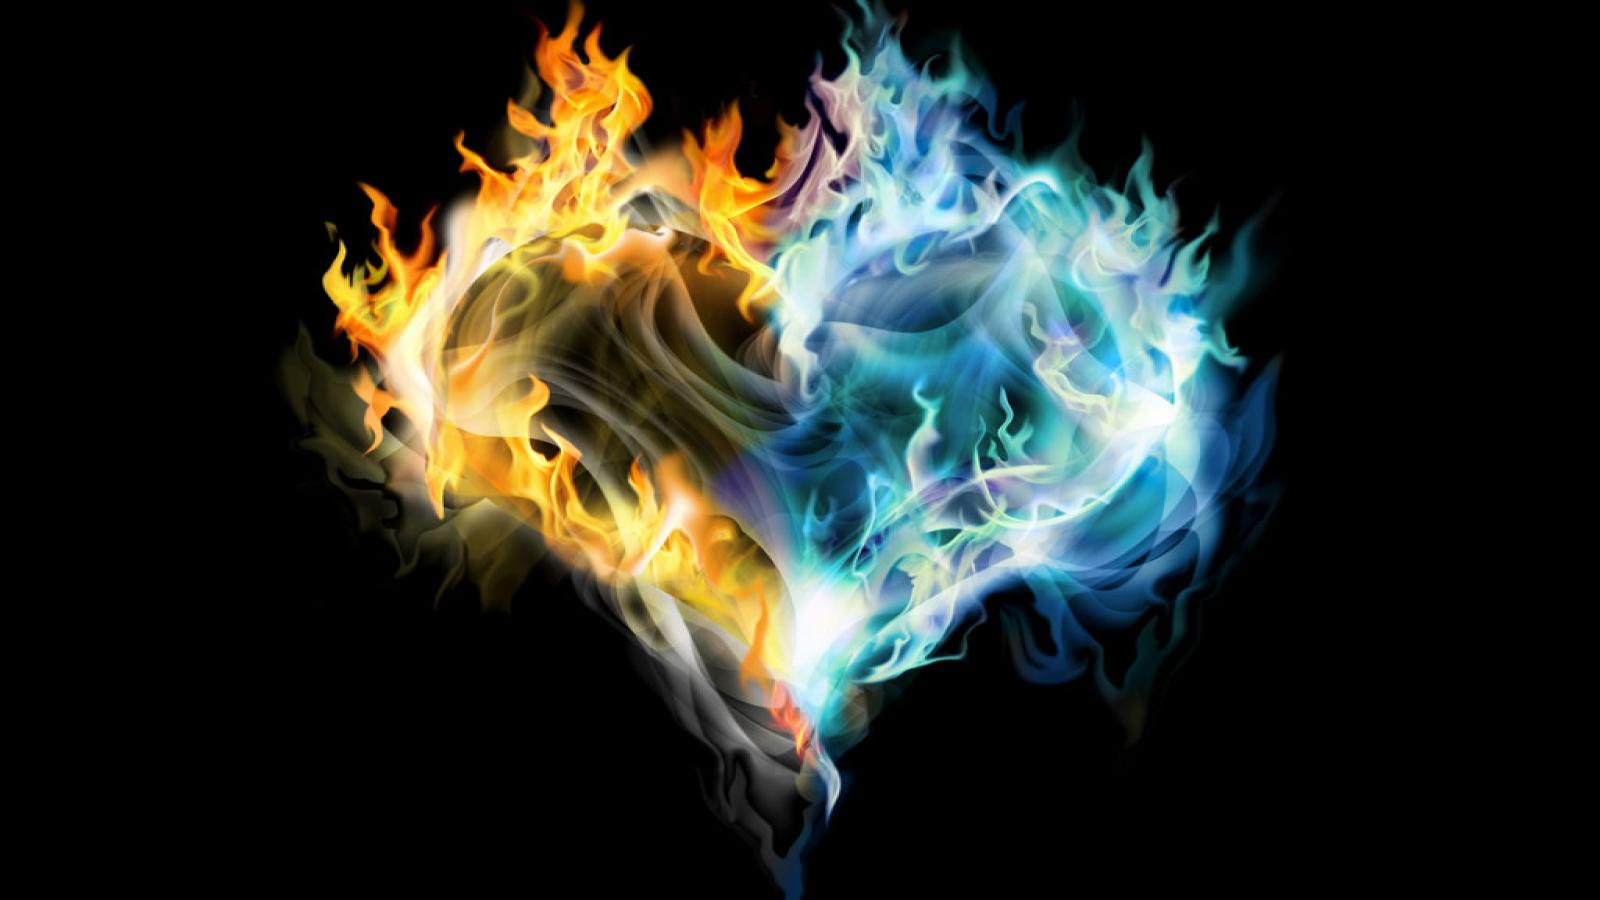 blue heart wallpaper,flame,fire,heat,fractal art,water